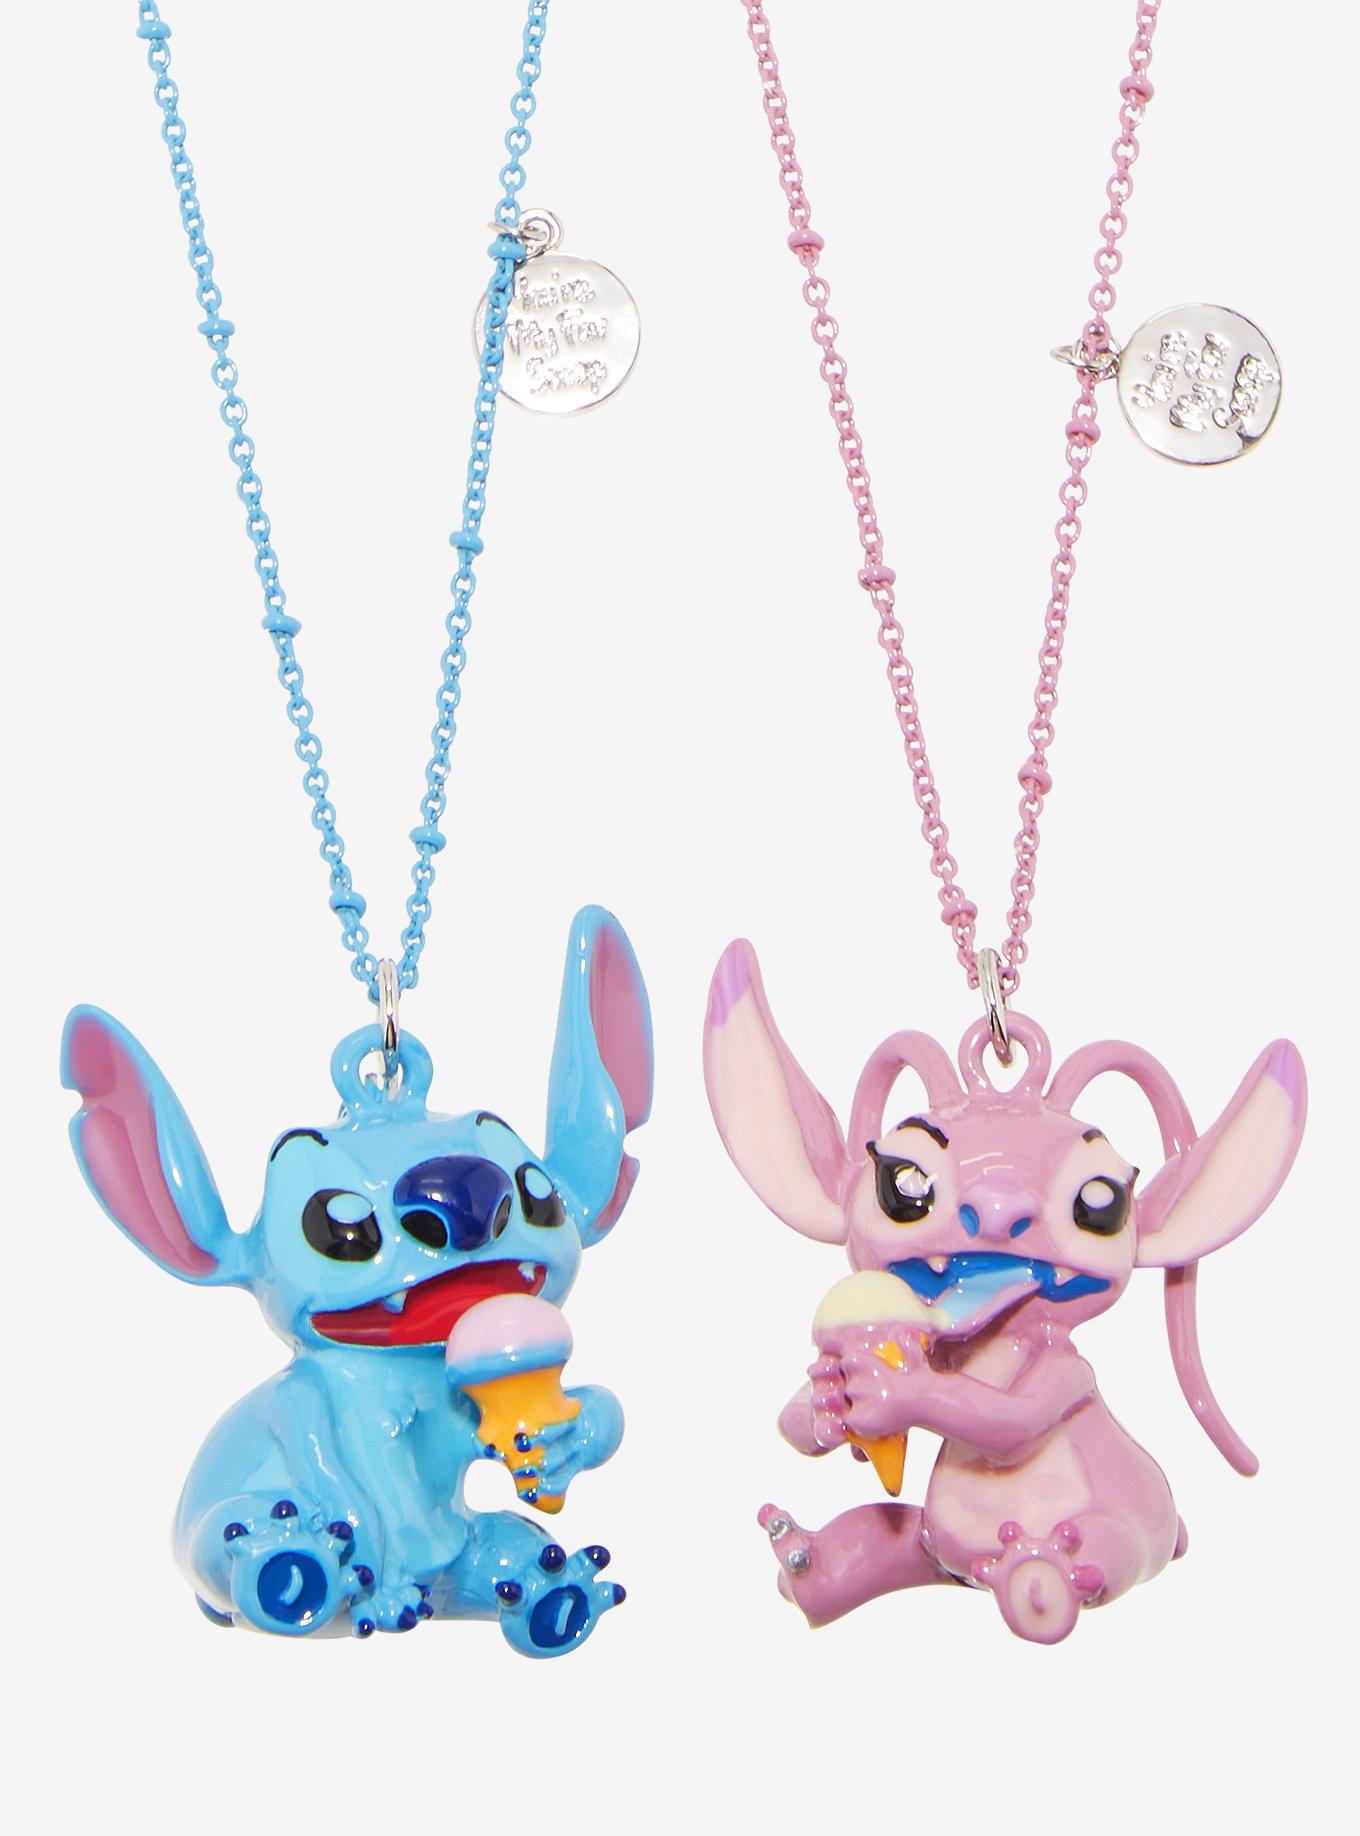 Stitch Best Friend Necklaces | sites.unimi.it